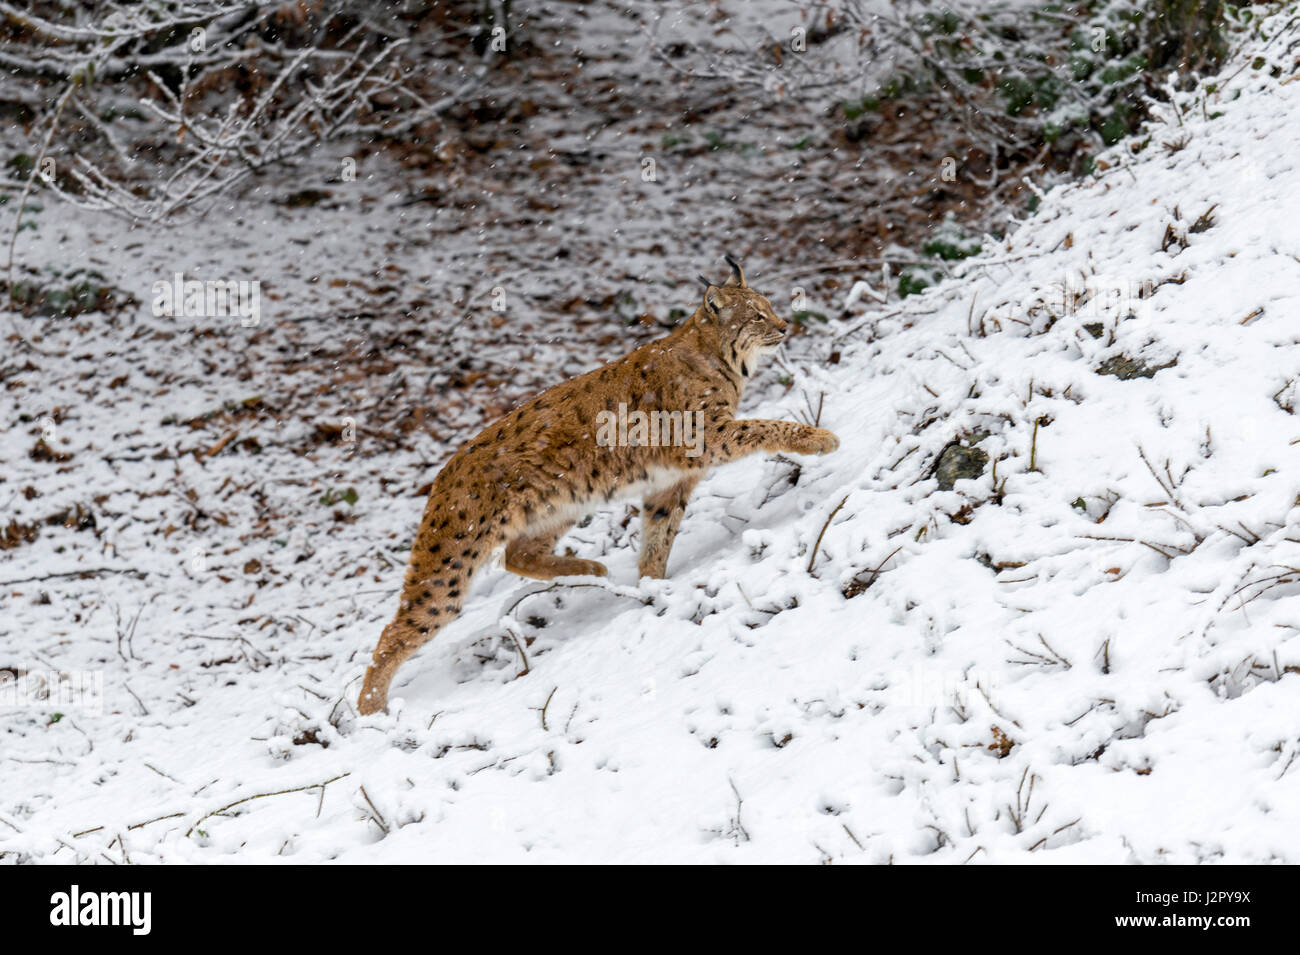 Hermoso el lince eurásico (Lynx lynx) representada forrajeando en un bosque remoto Configuración forestal a mediados de invierno. Foto de stock